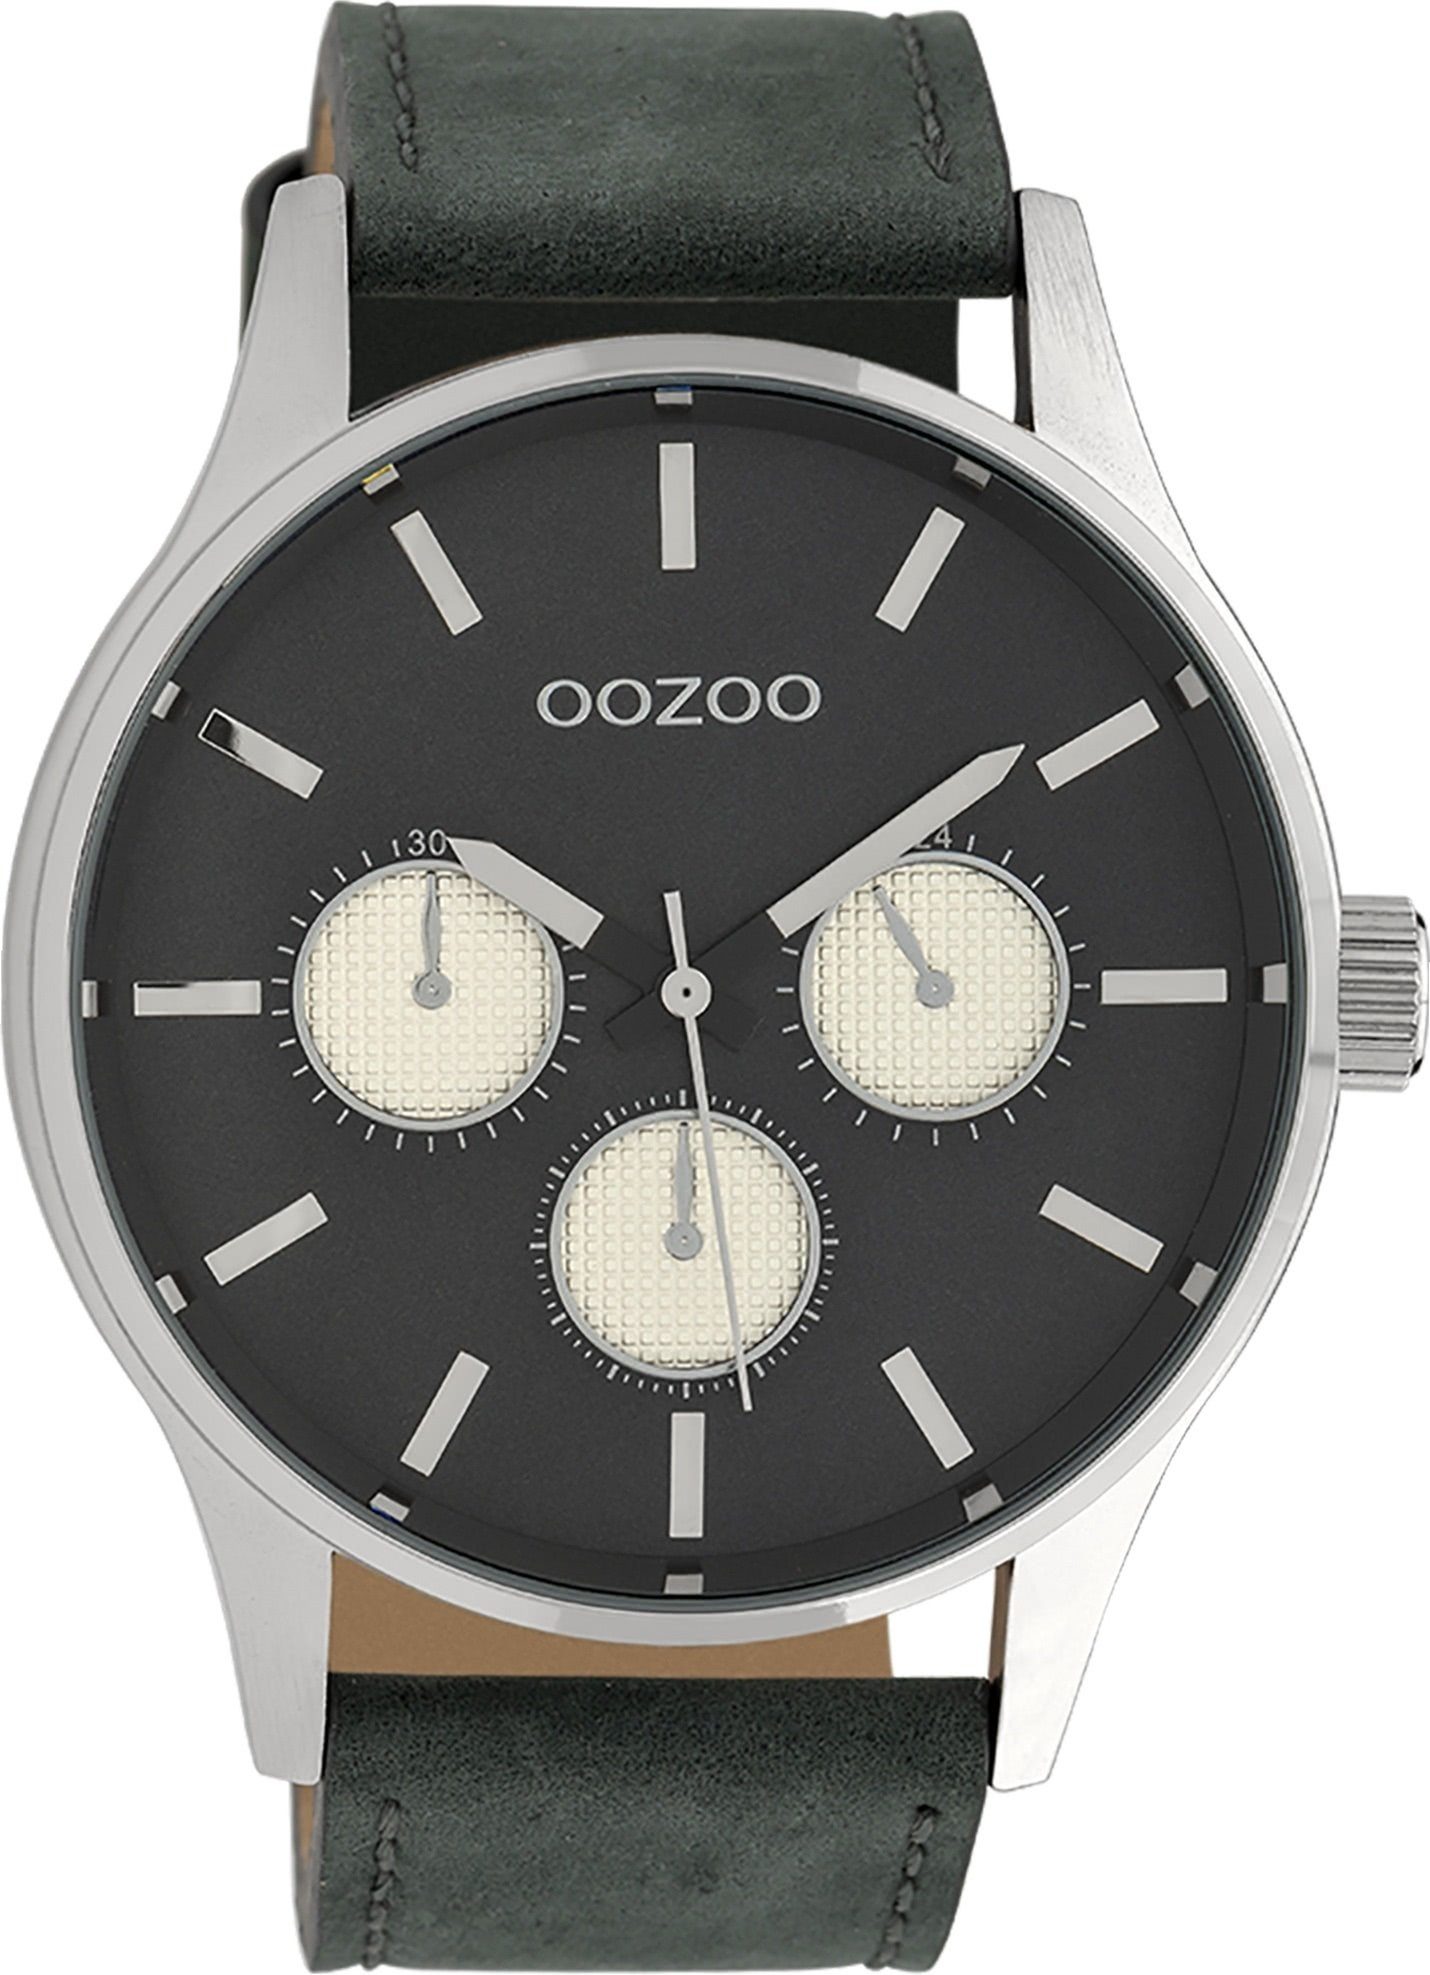 groß Armbanduhr Japanisches Oozoo OOZOO Herrenuhr Lederarmband, Laufwerk Herren Fashion-Style, Timepieces Analog, rund, extra (ca. Quarzuhr 48mm)